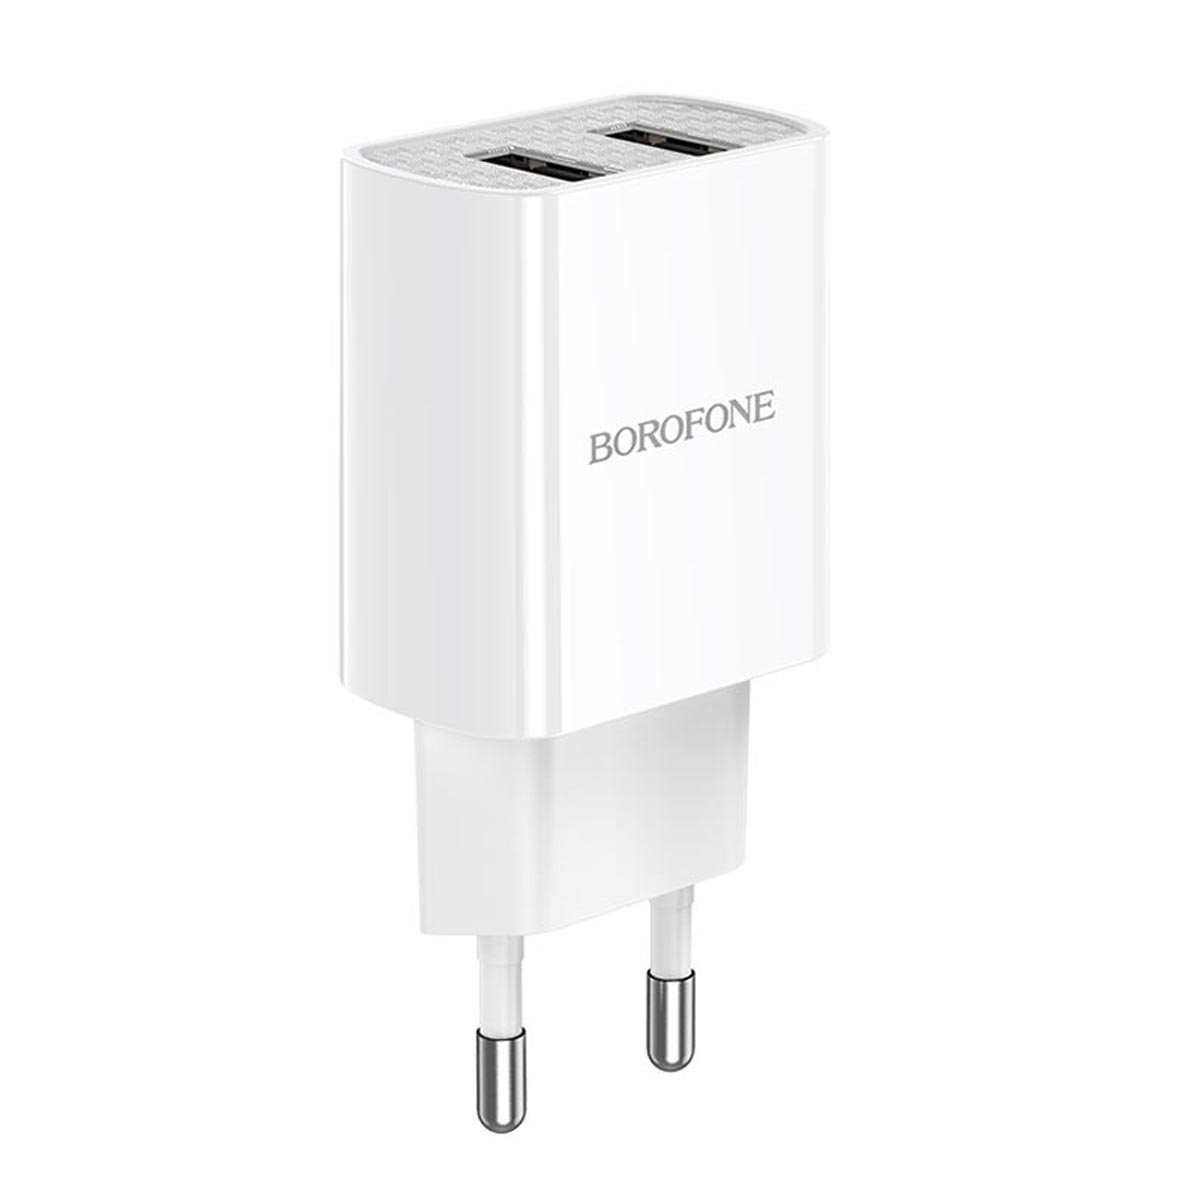 СЗУ (Сетевое зарядное устройство) BOROFONE BA53A Powerway, 2.1A, 2 USB, цвет белый